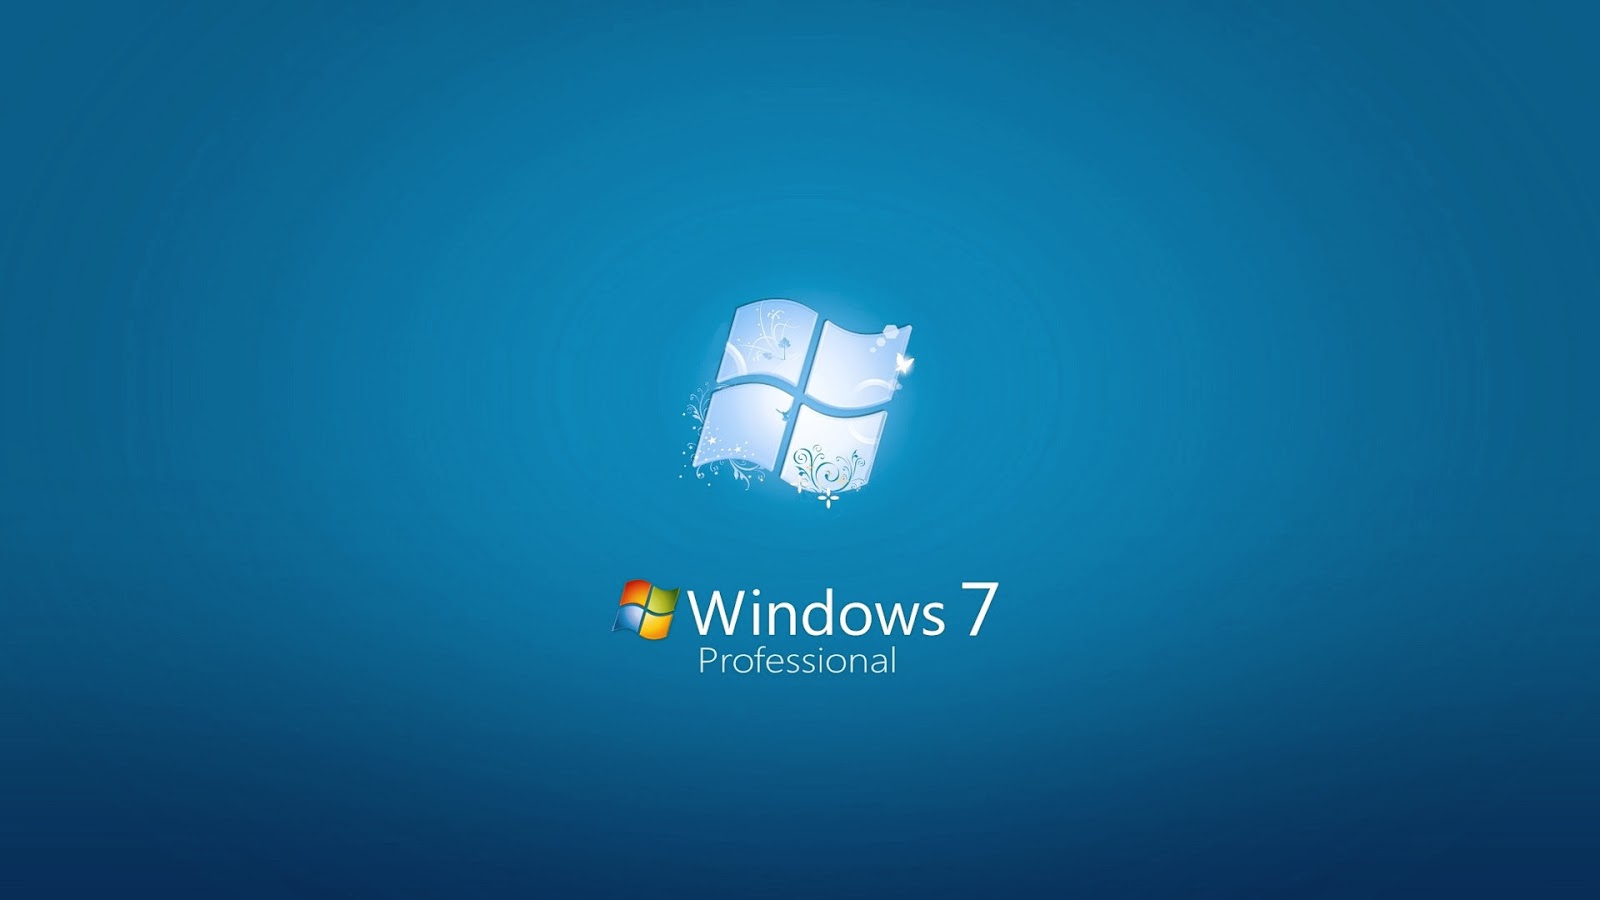 Windows 7 Professional OEM serial key or number